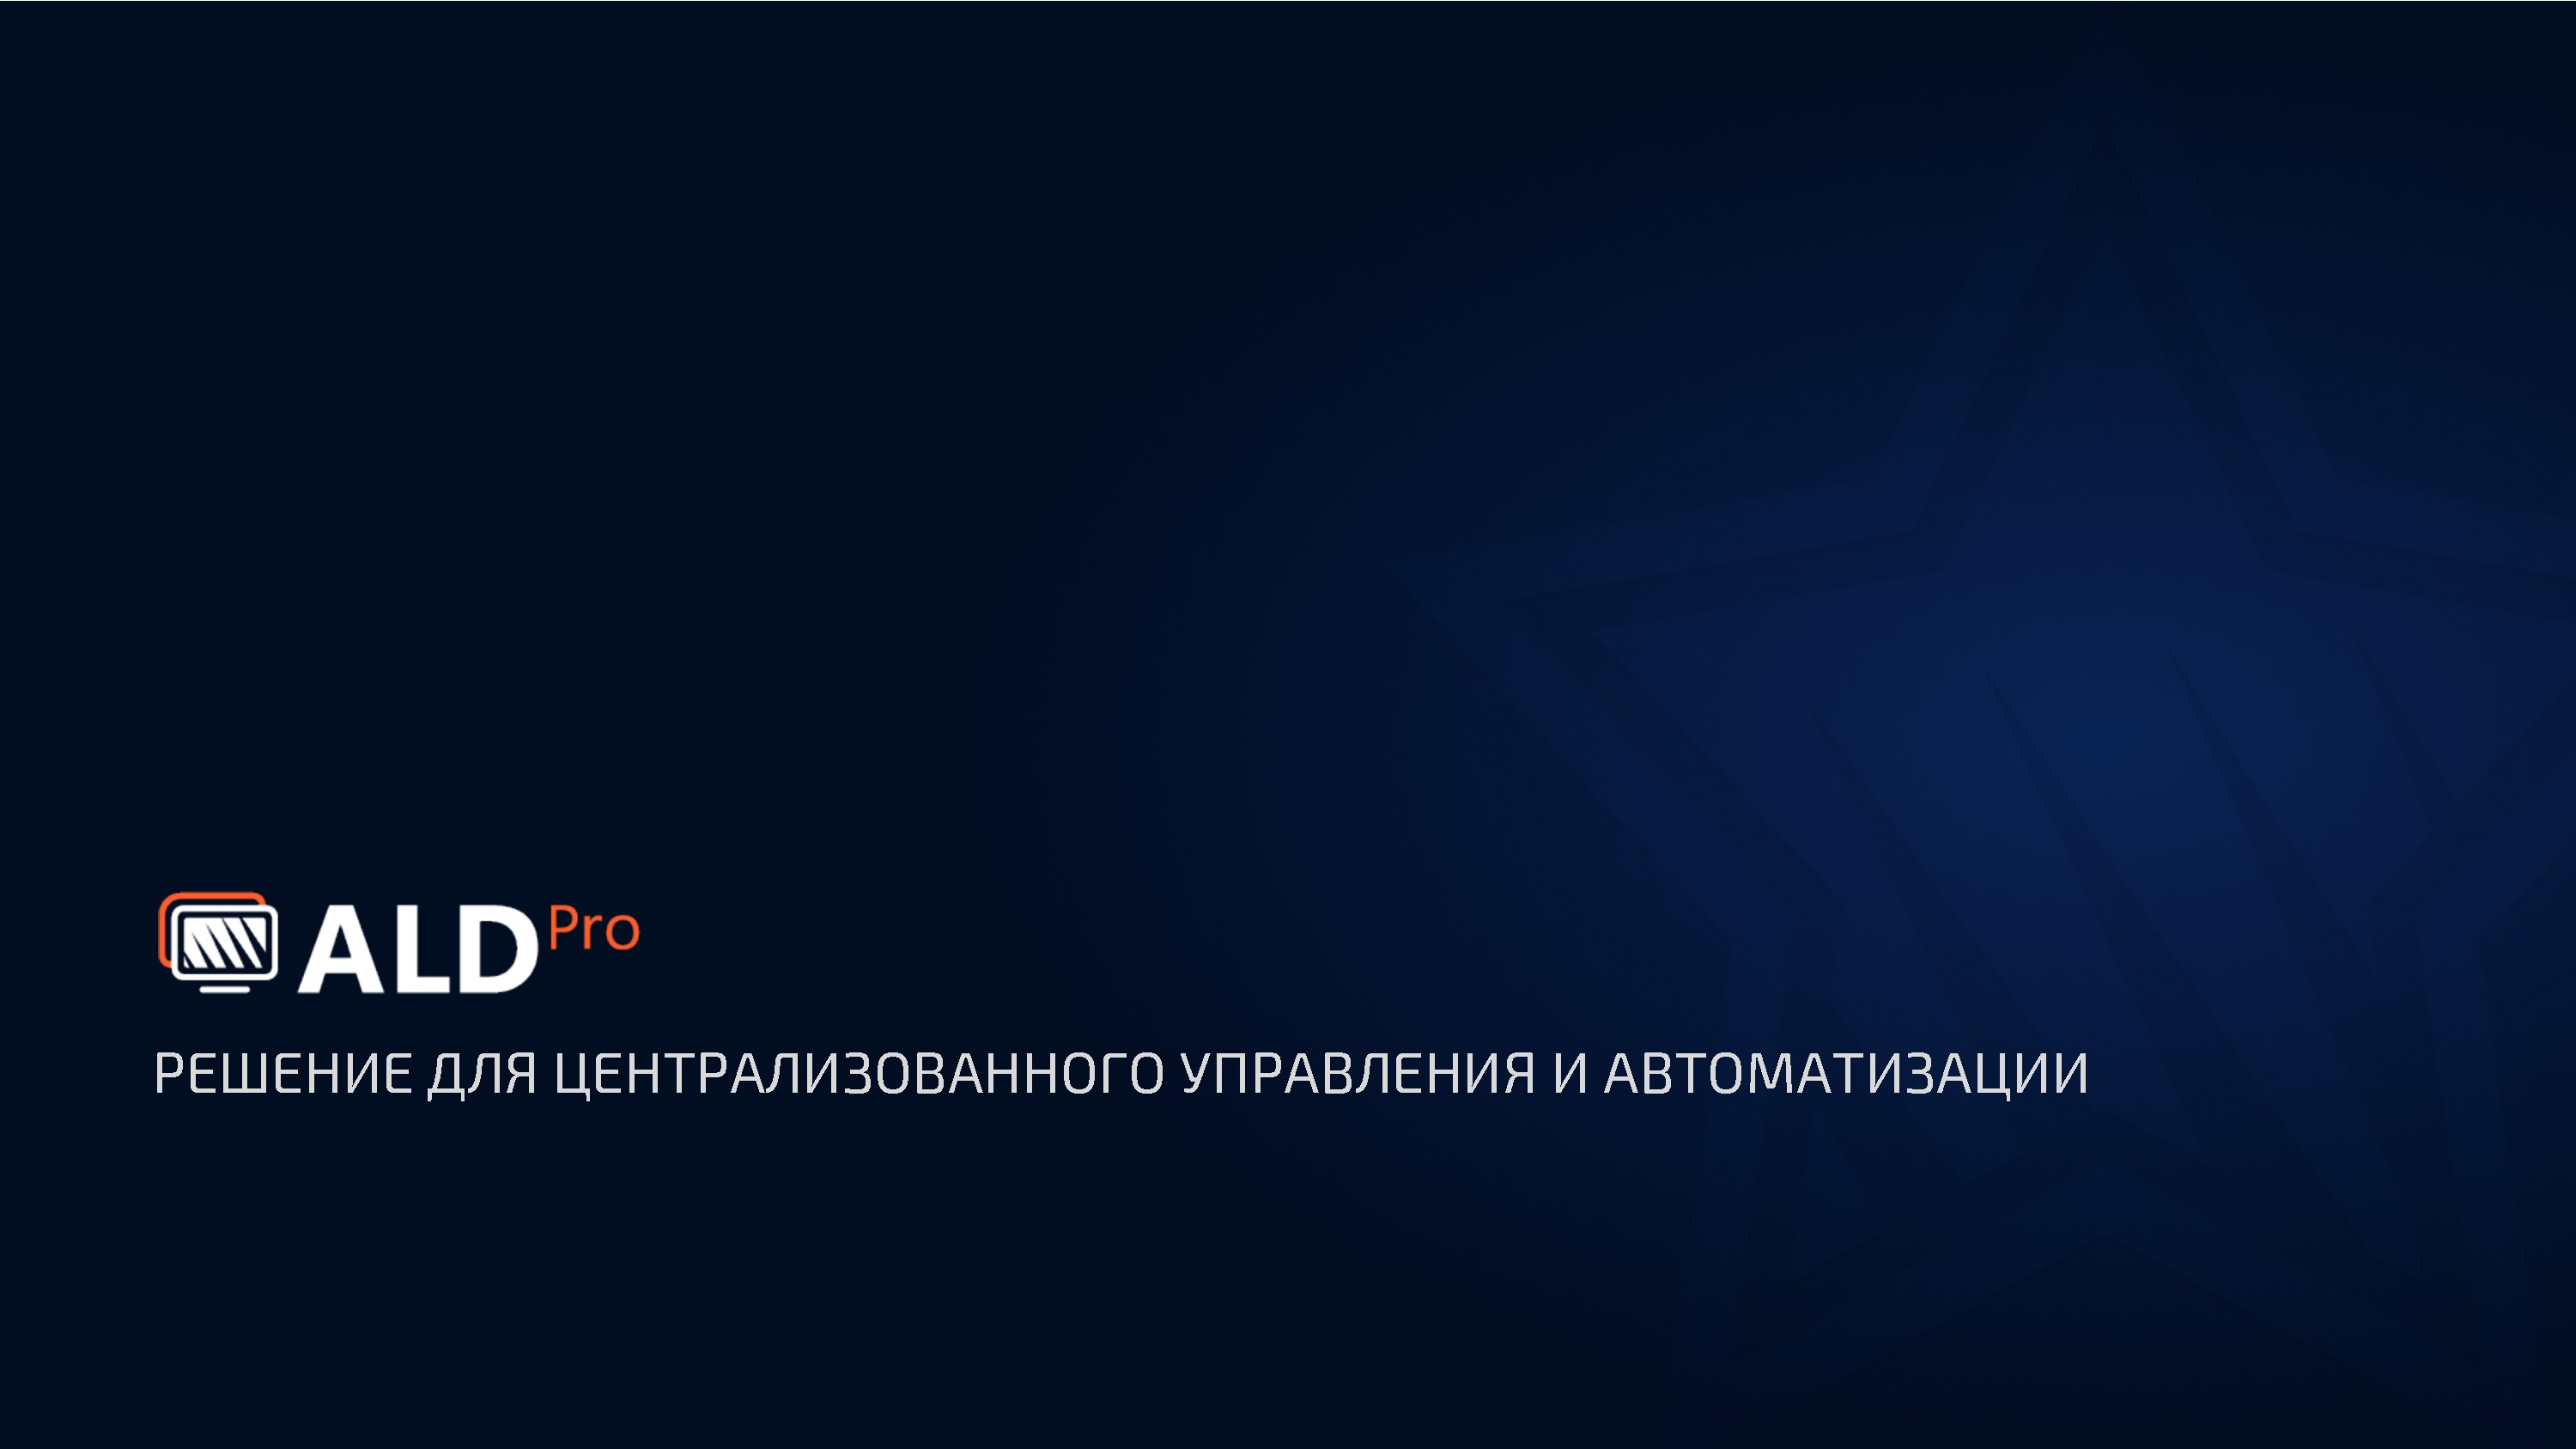 Ald pro. ALD Pro Astra Linux. ALD Pro logo. Домен ALD Linux.